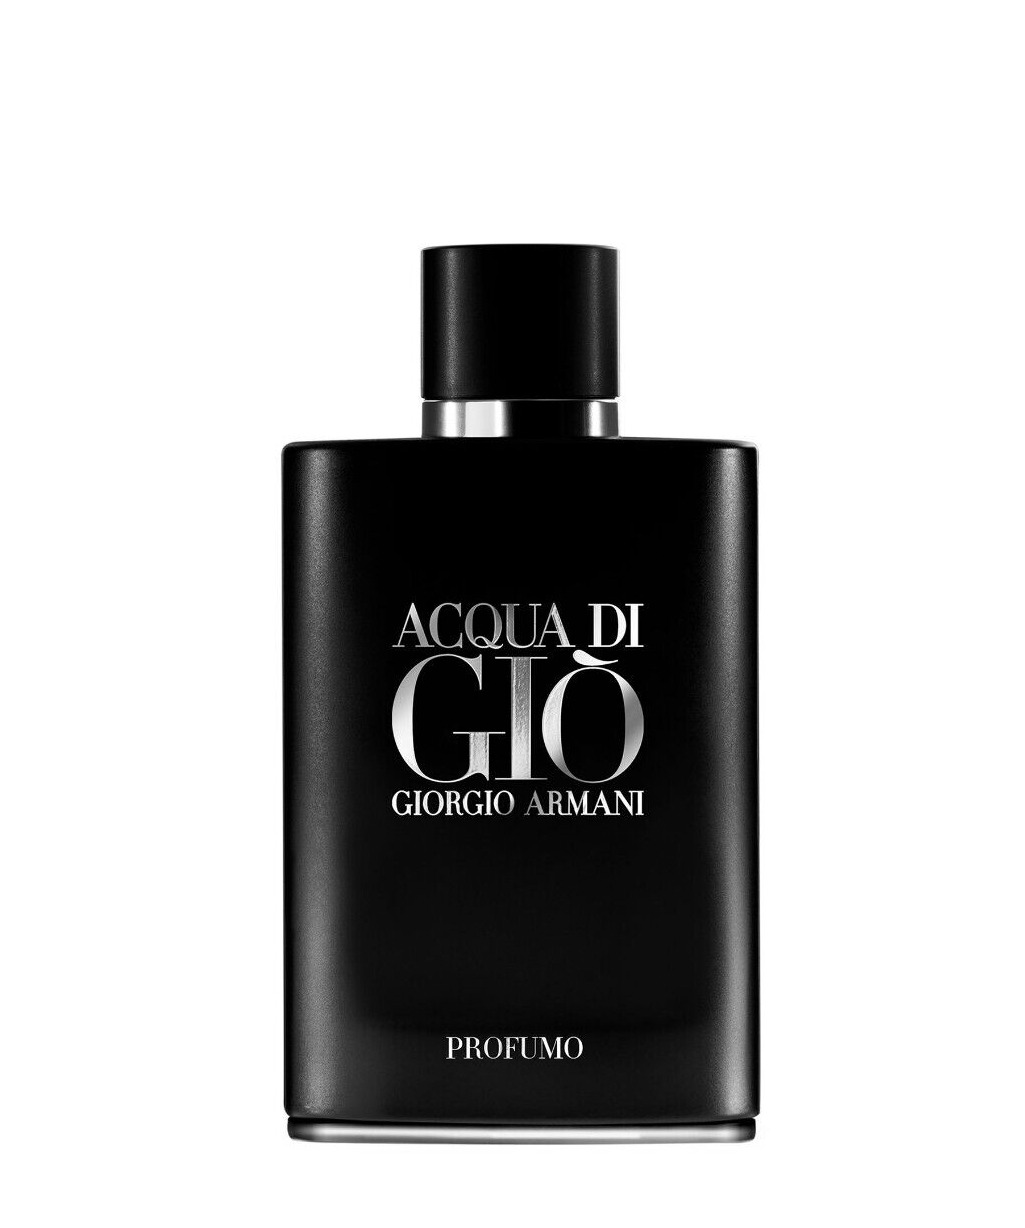 Giorgio Armani Acqua Di Gio Profumo EDP Cologne for Men 4.2 oz 125 ml Parfum